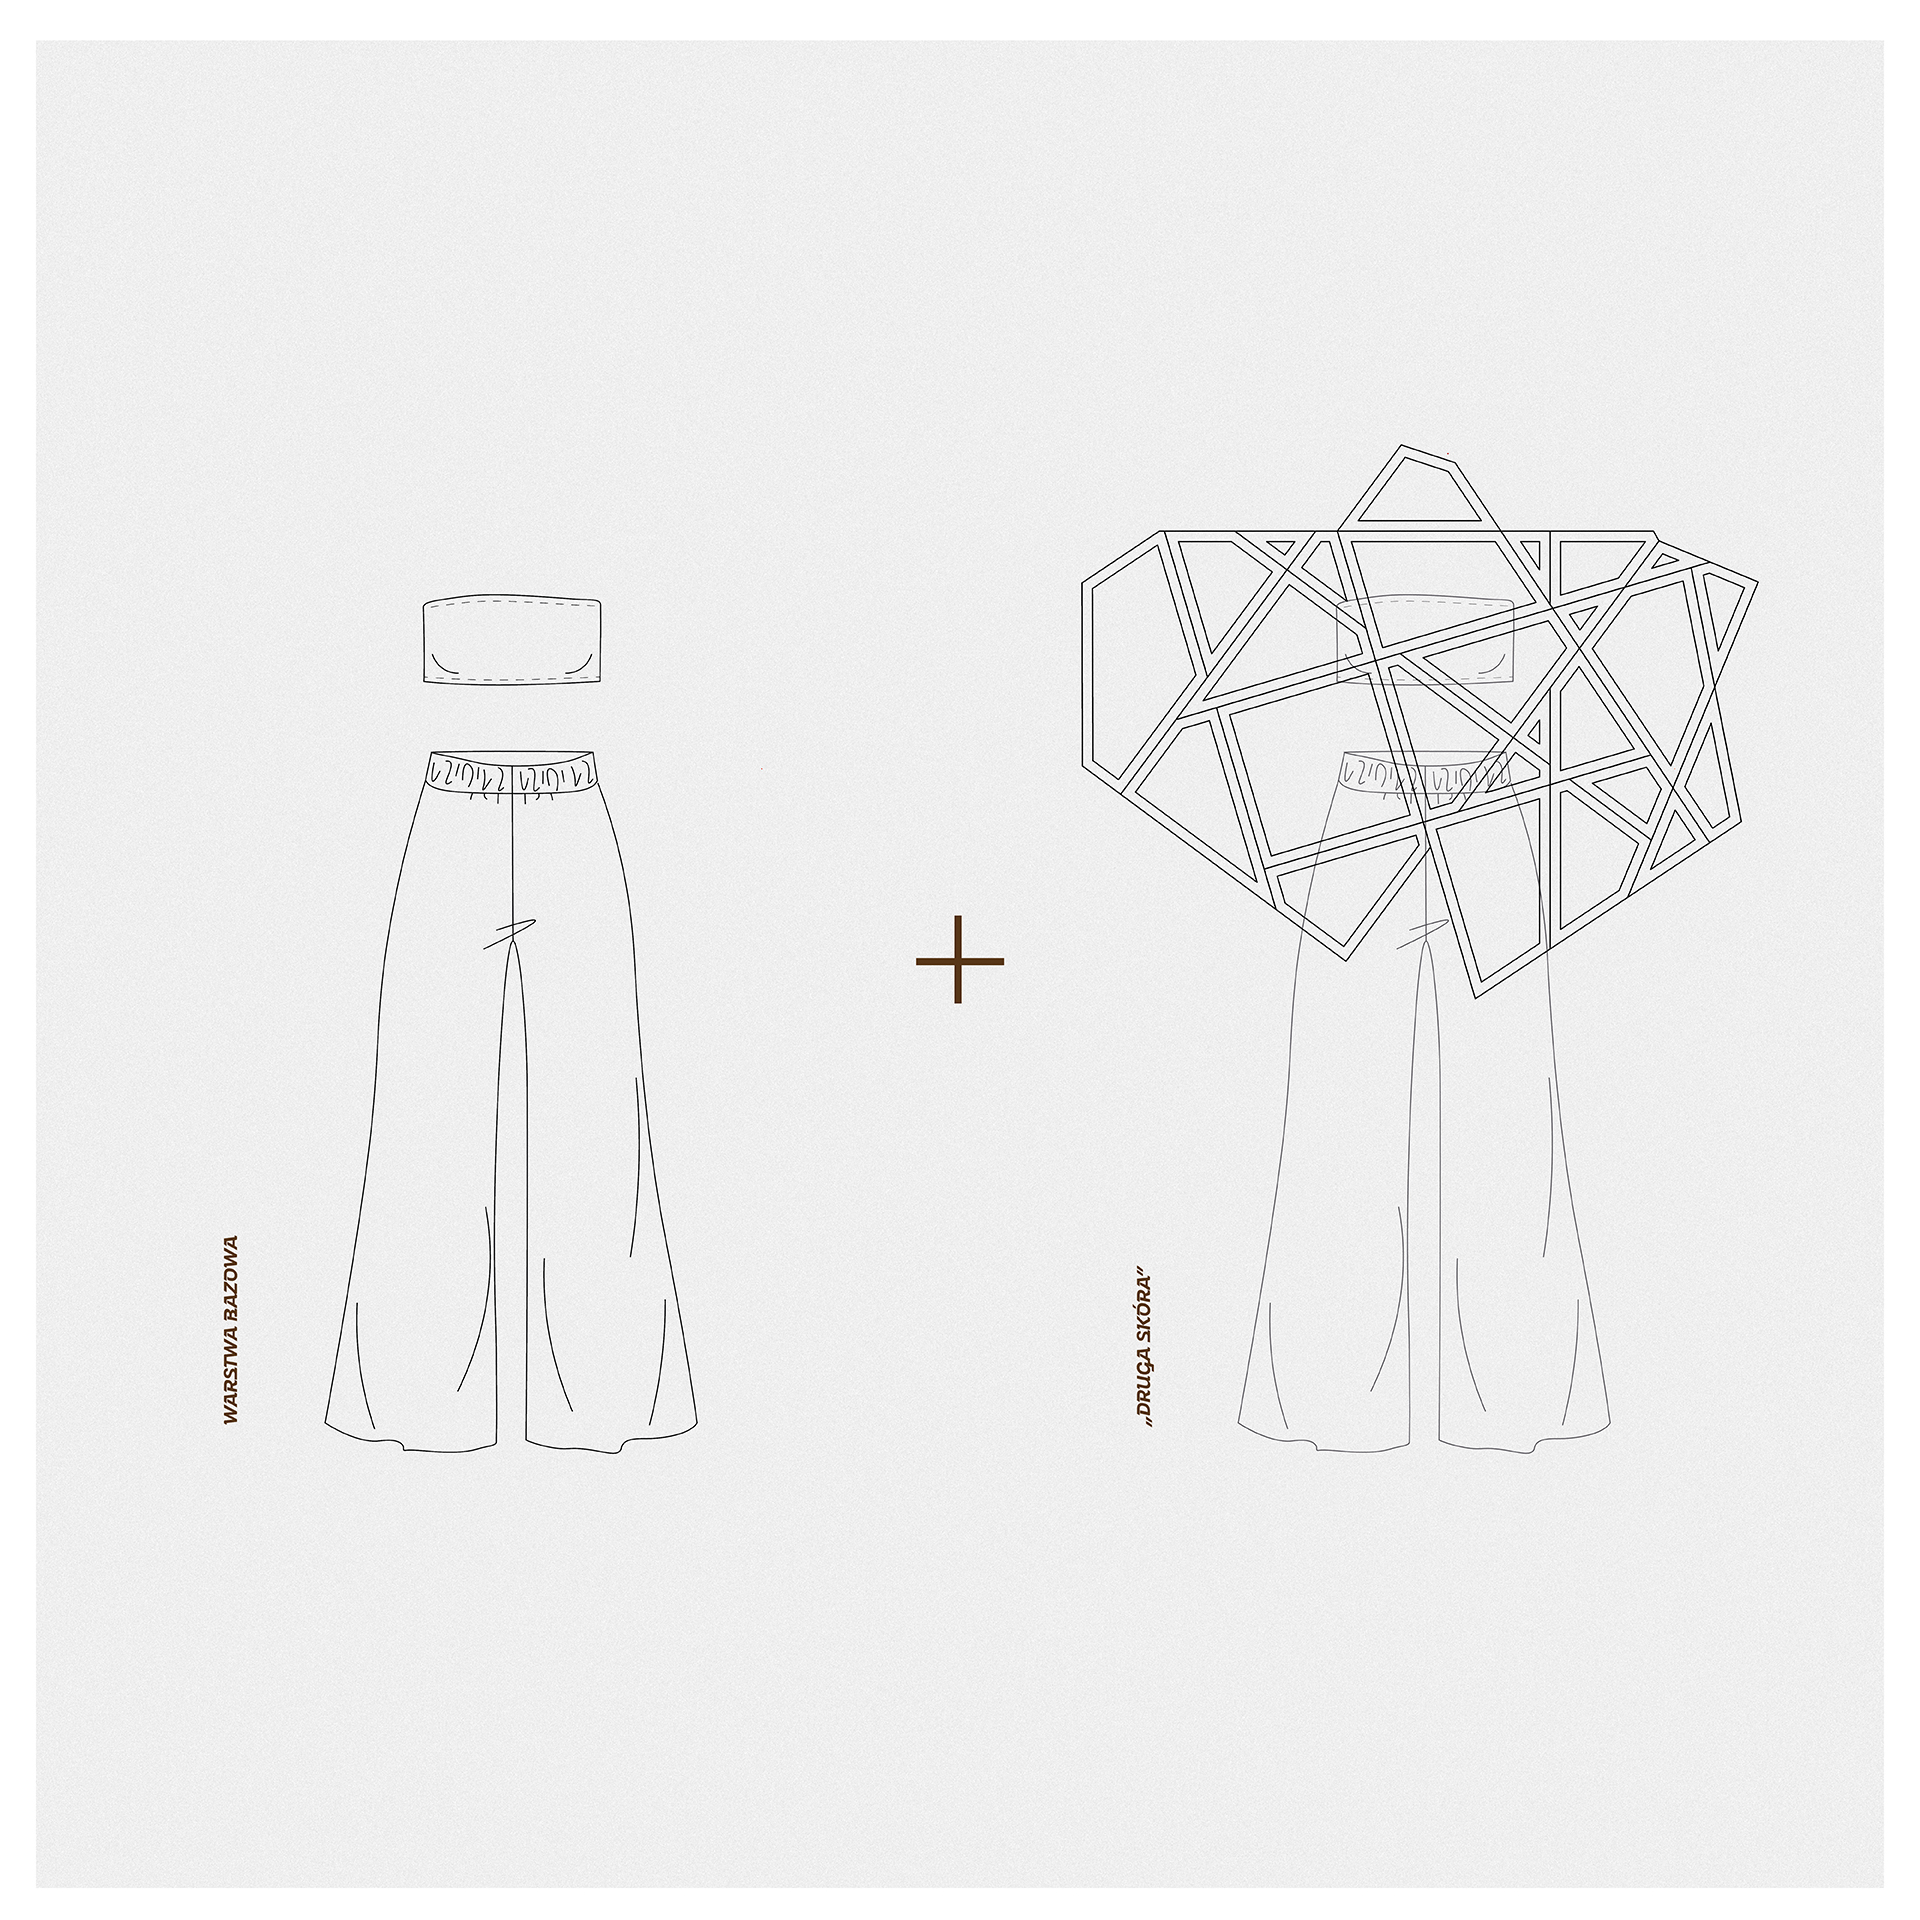 Dwa rysunki techniczne ubioru. Zestaw top i spodnie oraz zestaw top, spodnie, geometryczna forma na górze sylwetki